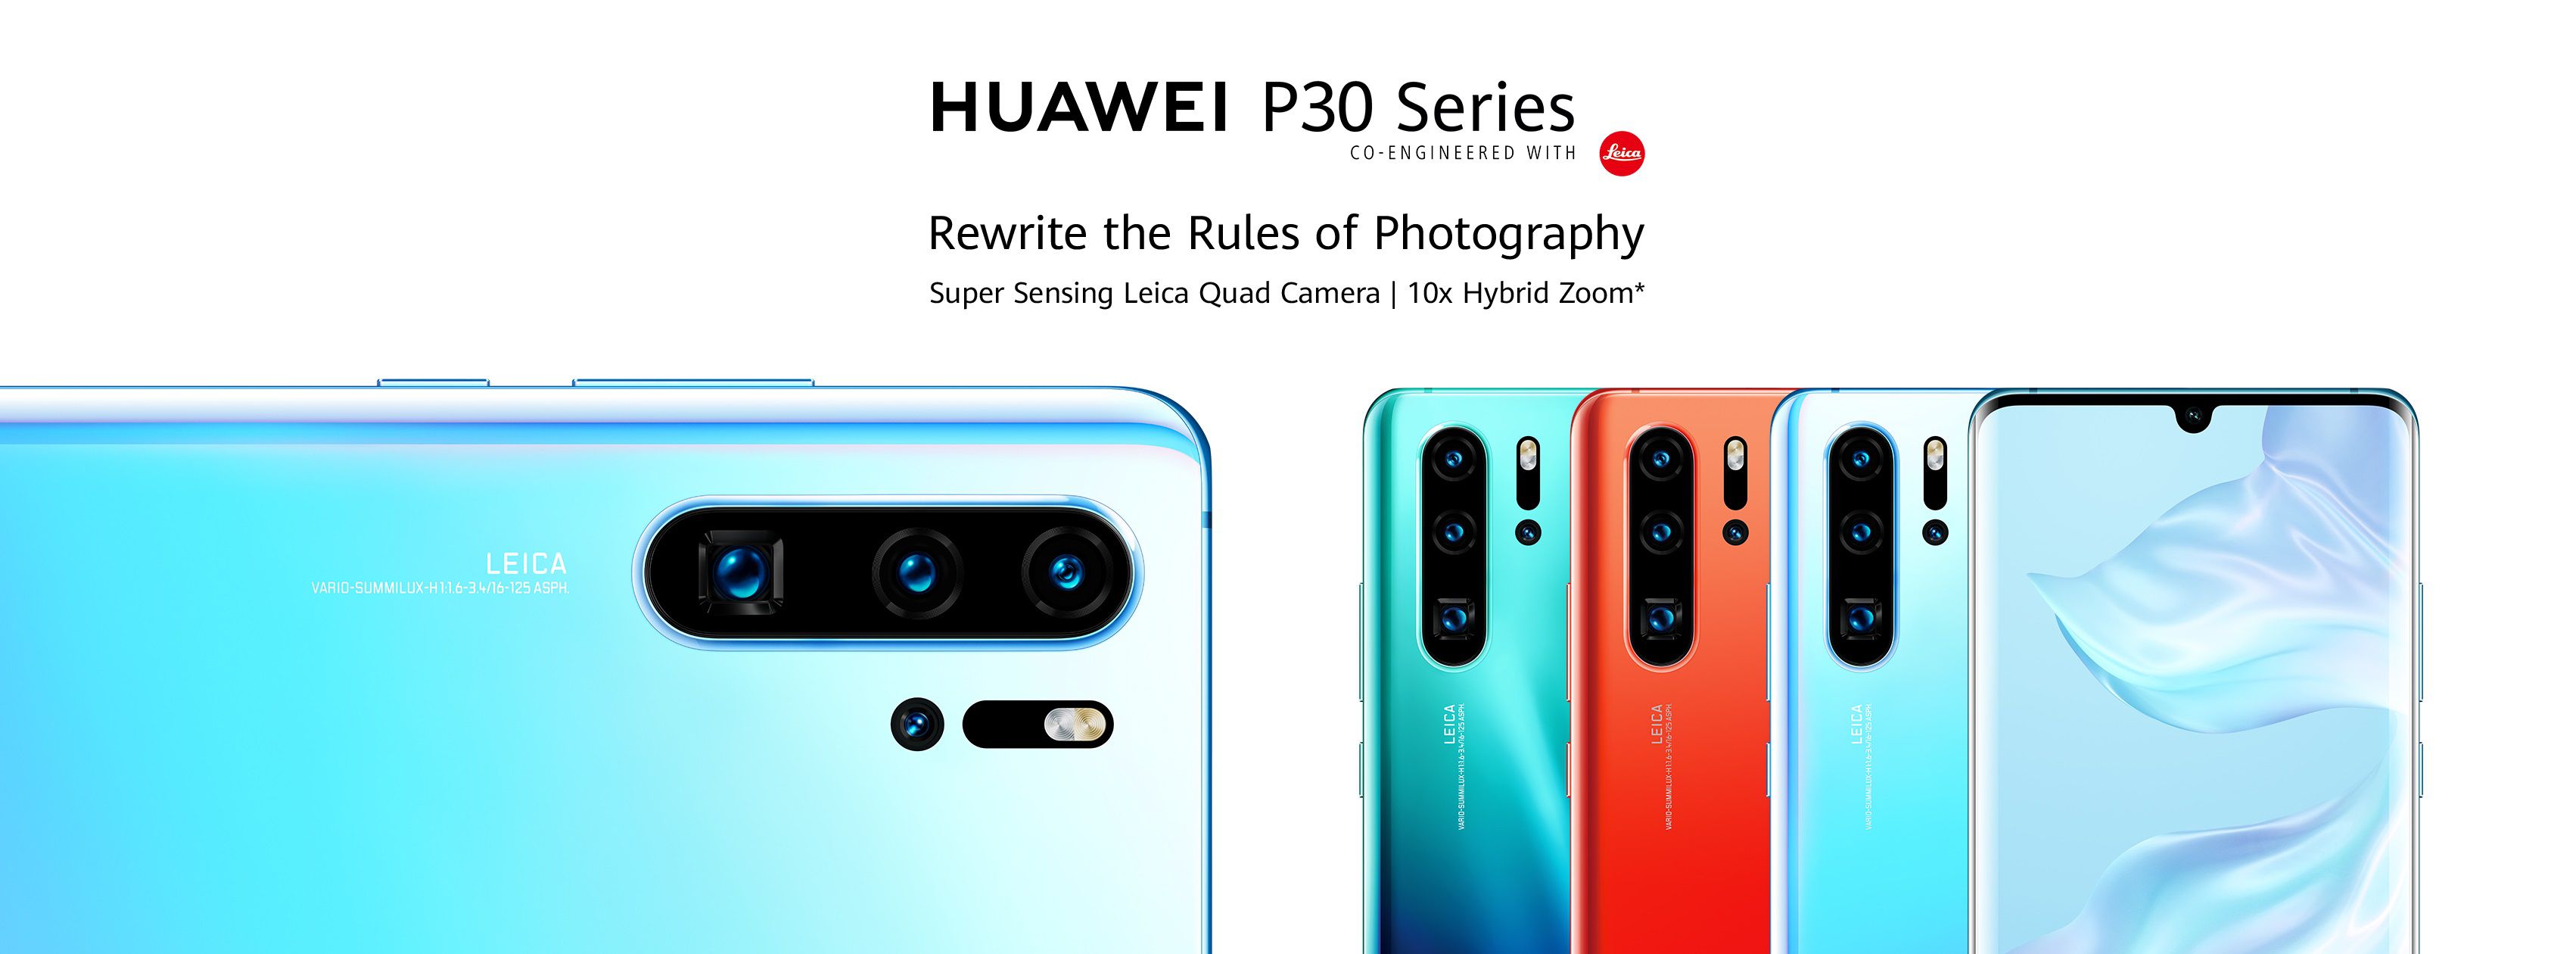 Huawei P30 e P30 Pro presentati ufficialmente: leggero passo in avanti rispetto alla serie P20, ma le fotocamere...